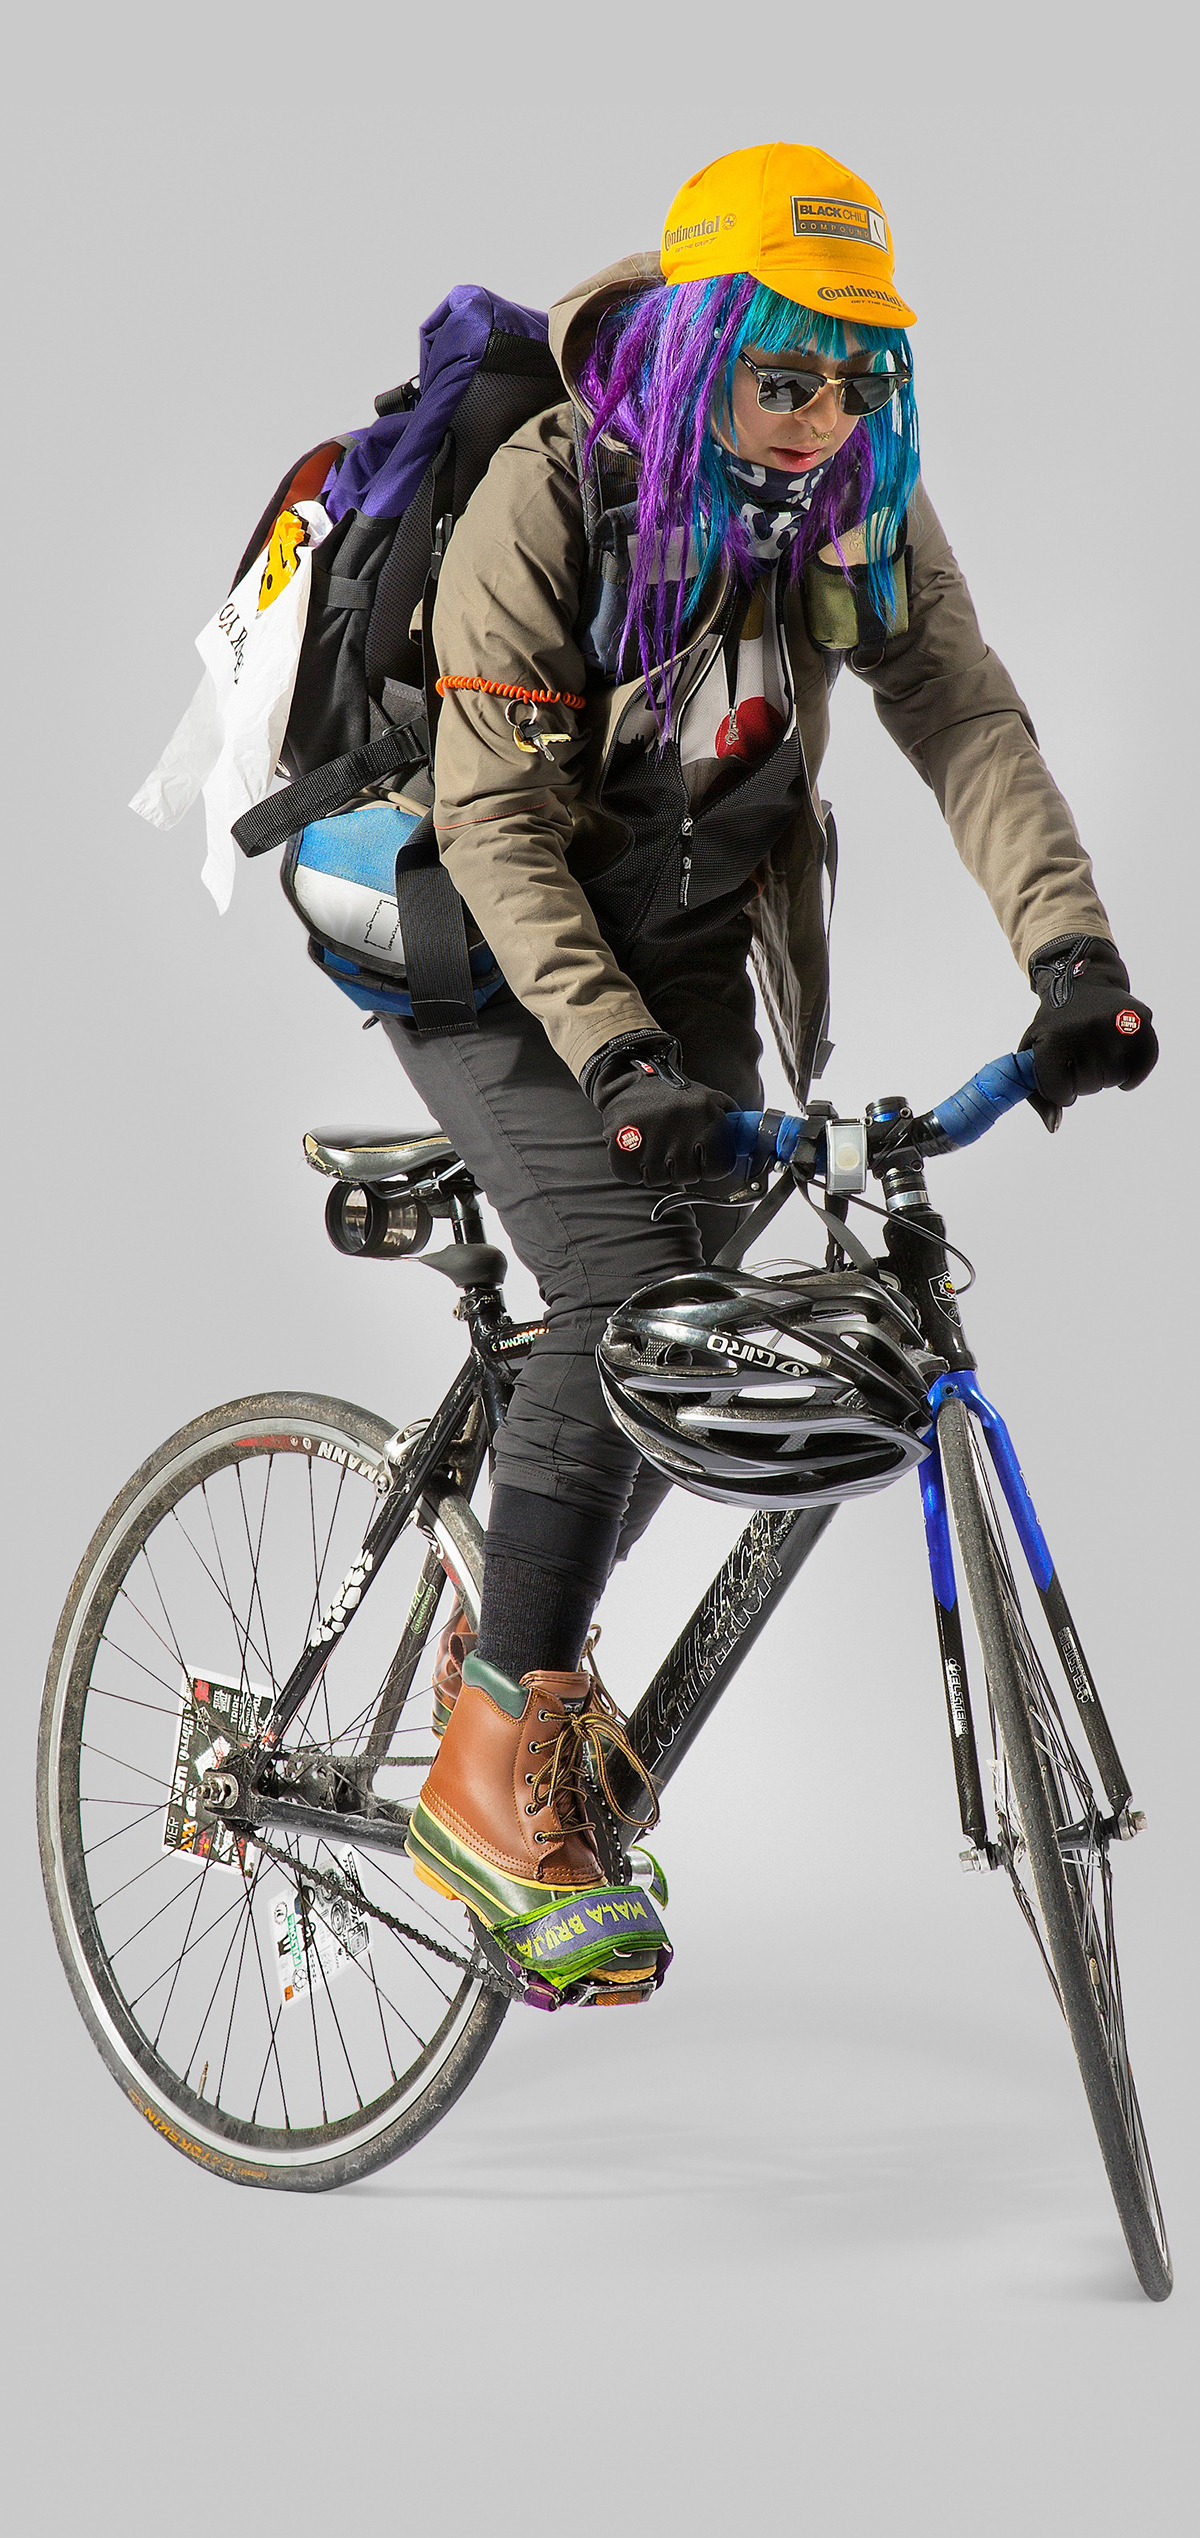 L'abbigliamento invernale del bike messenger